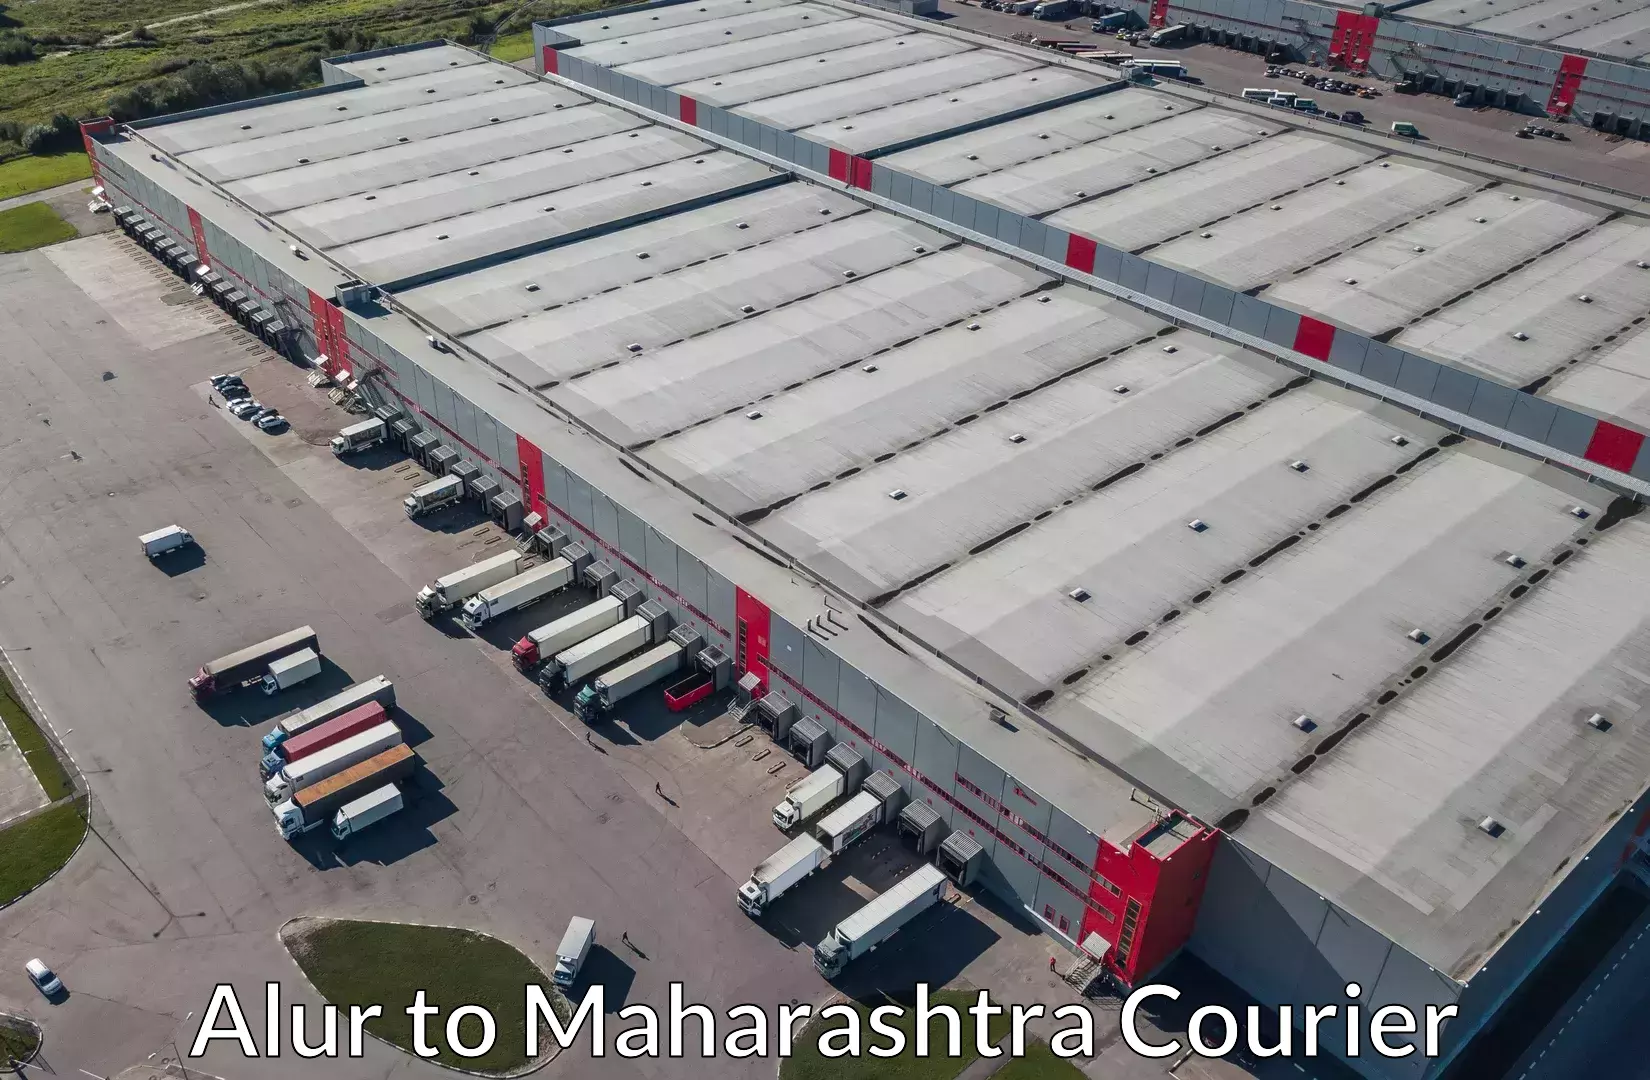 Professional furniture movers Alur to Maharashtra